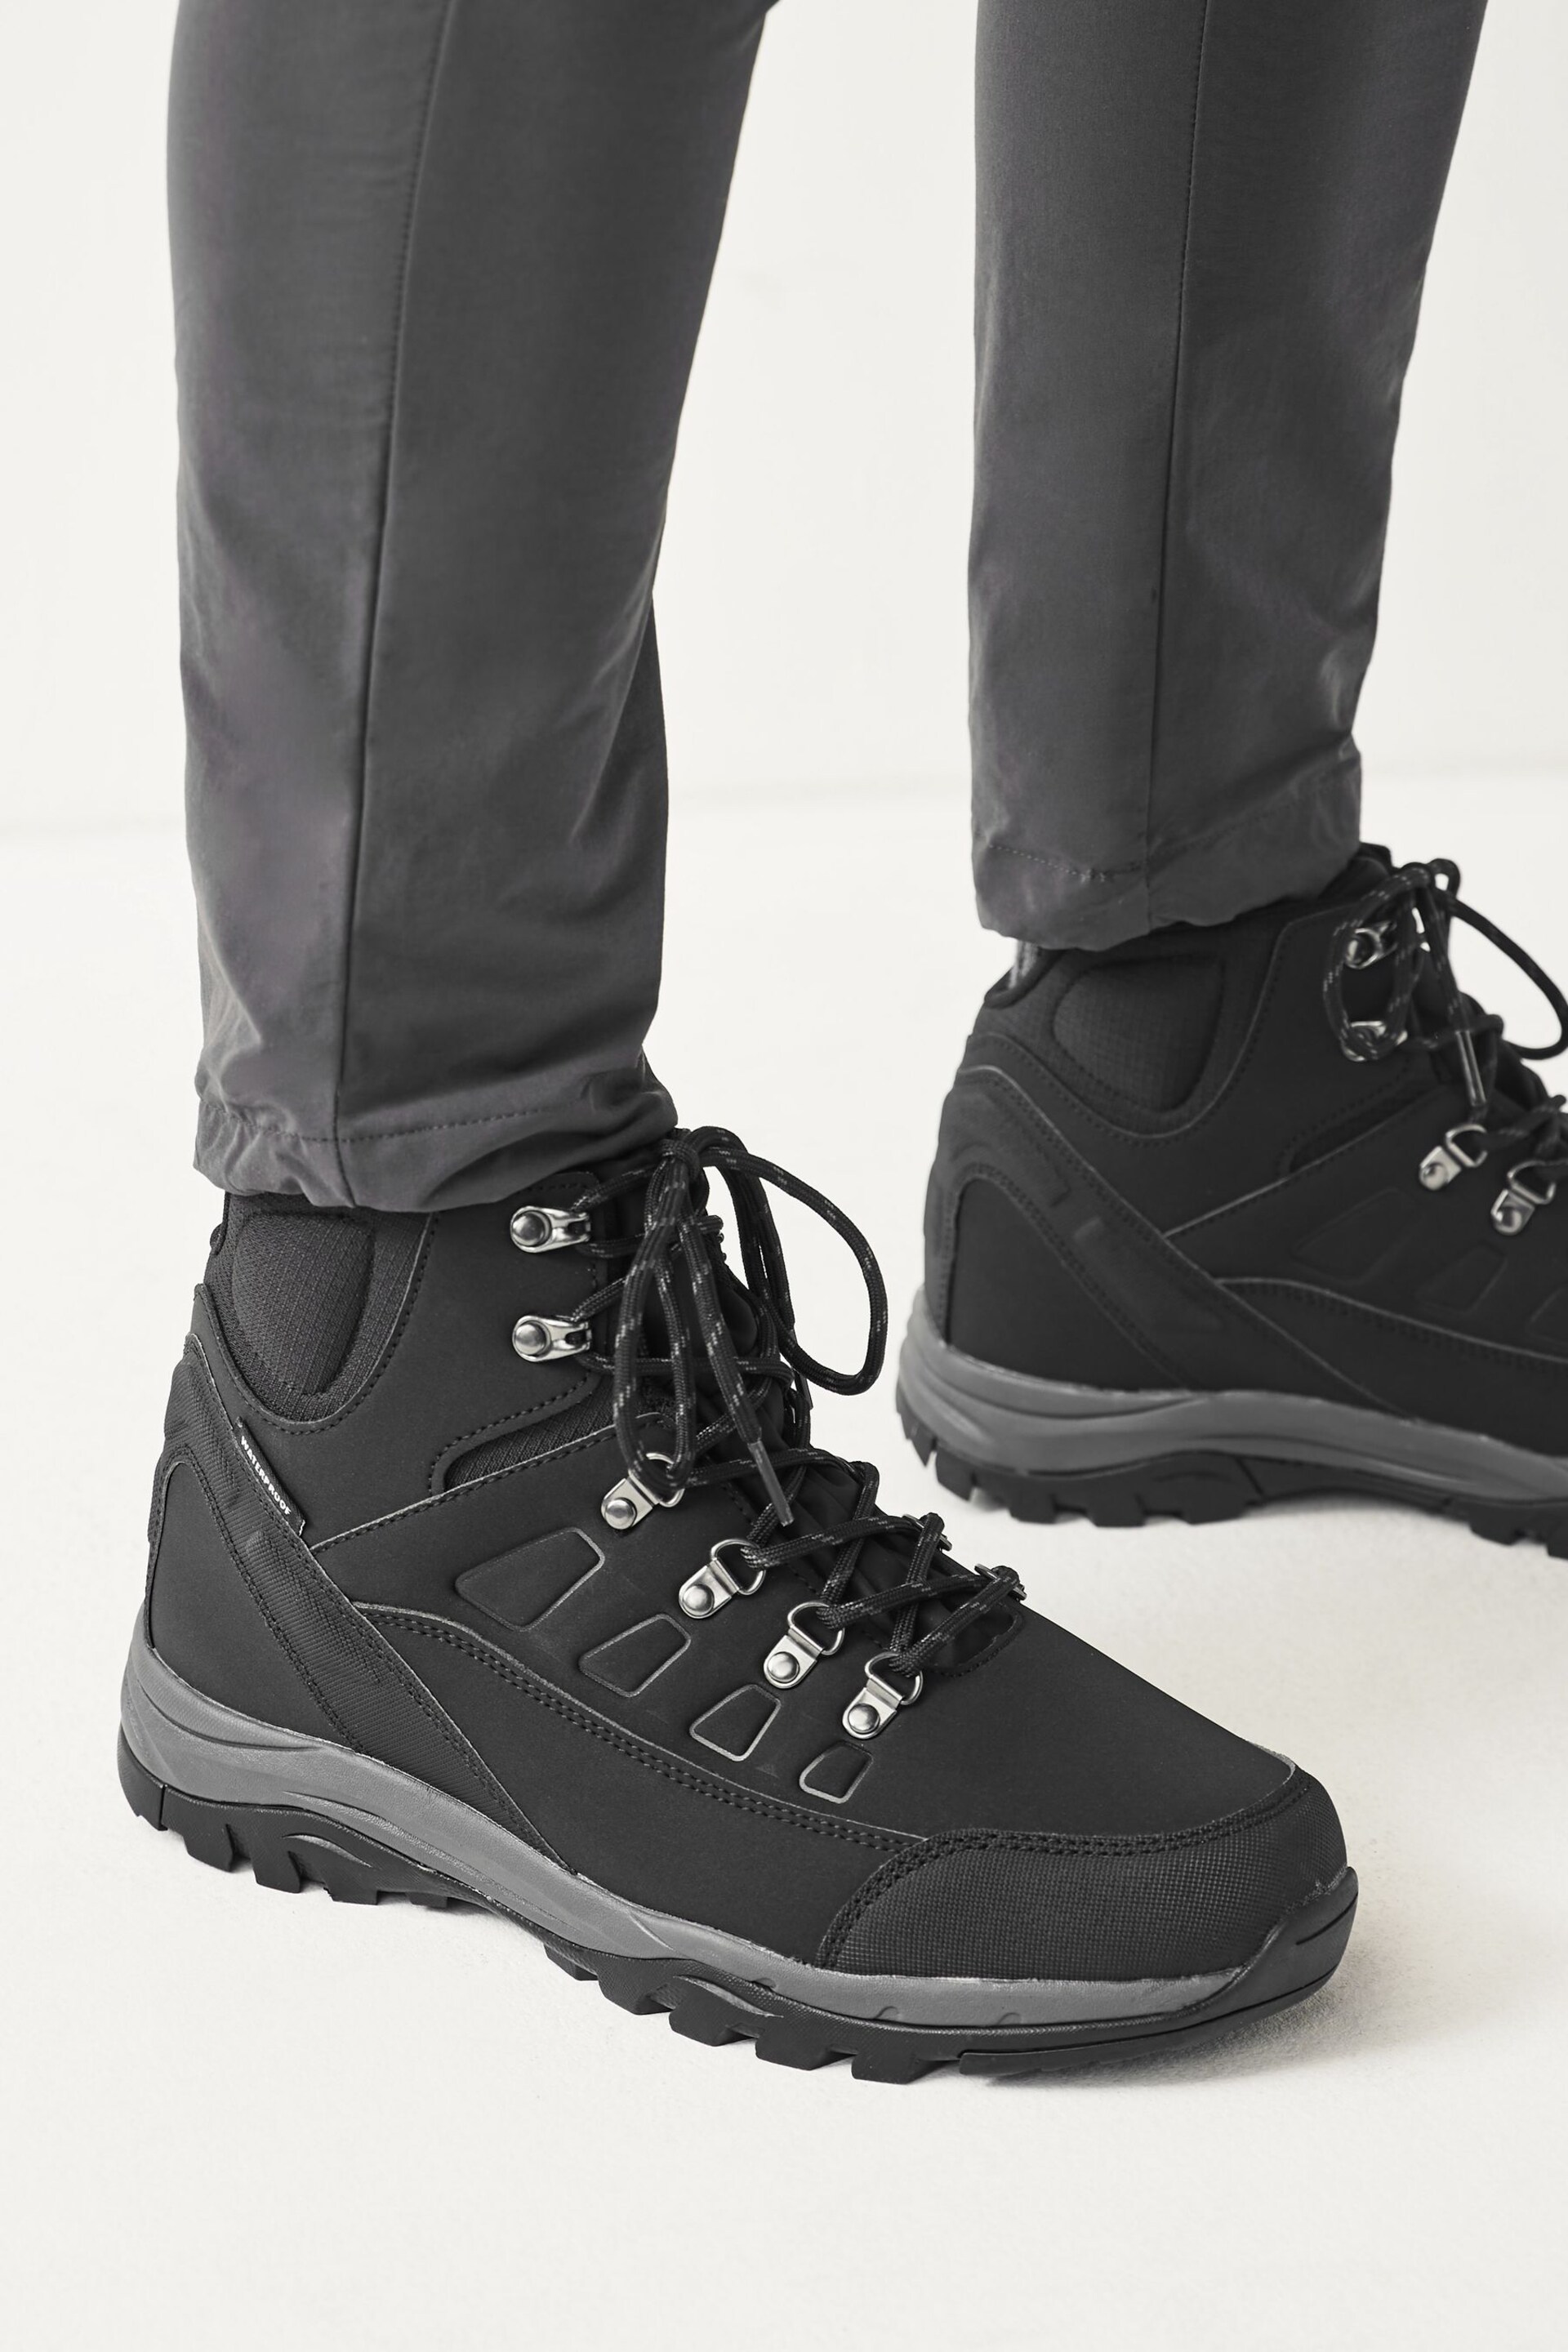 Black Waterproof Walking Boots - Image 5 of 7